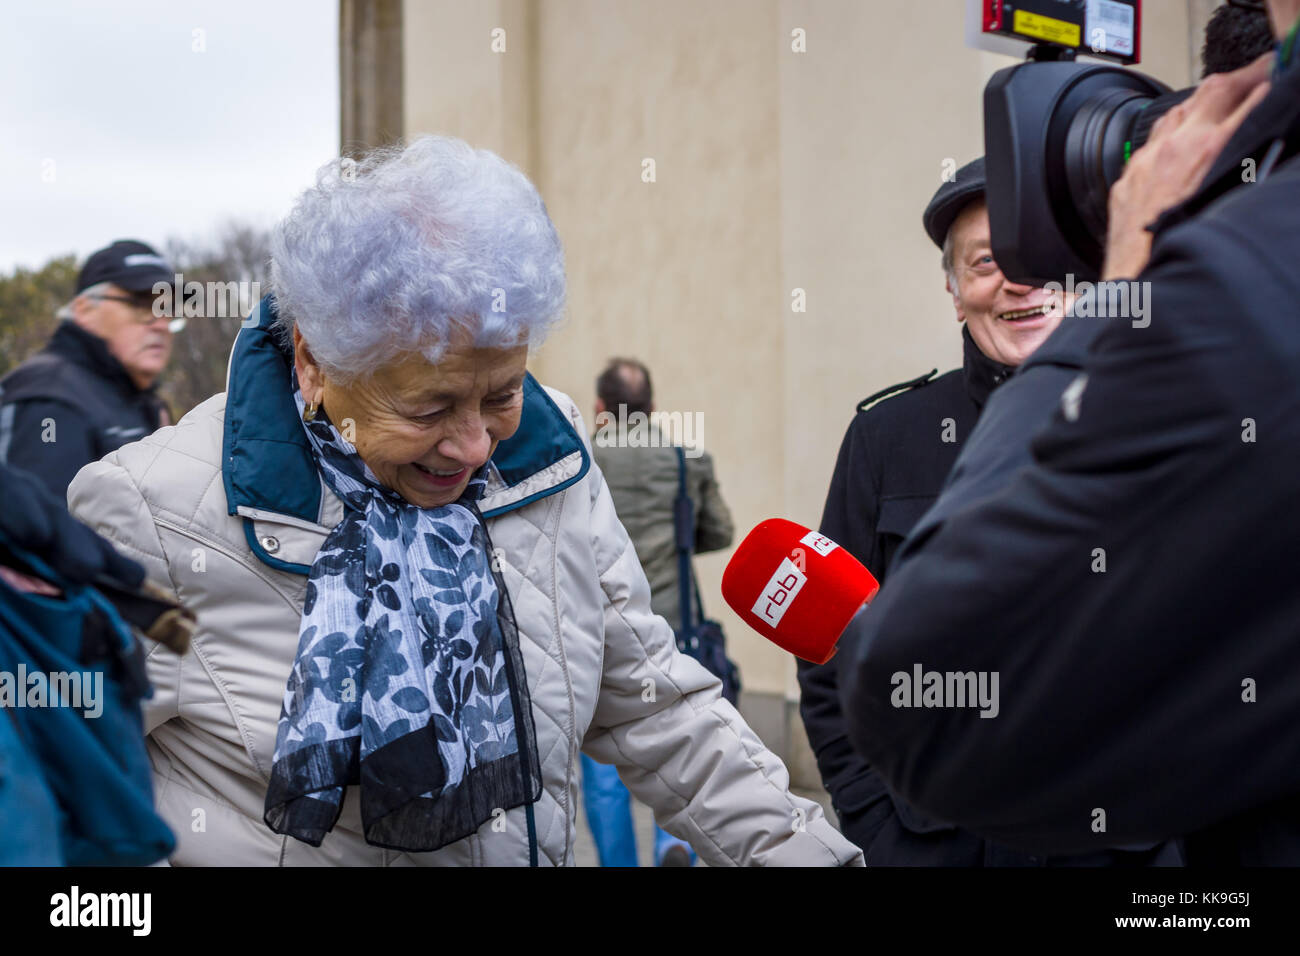 Berlin - 12. November 2017: Korrespondent der deutschen Fernsehsender RBB (Rundfunk Berlin Brandenburg) Interviews eine ältere Frau. Stockfoto